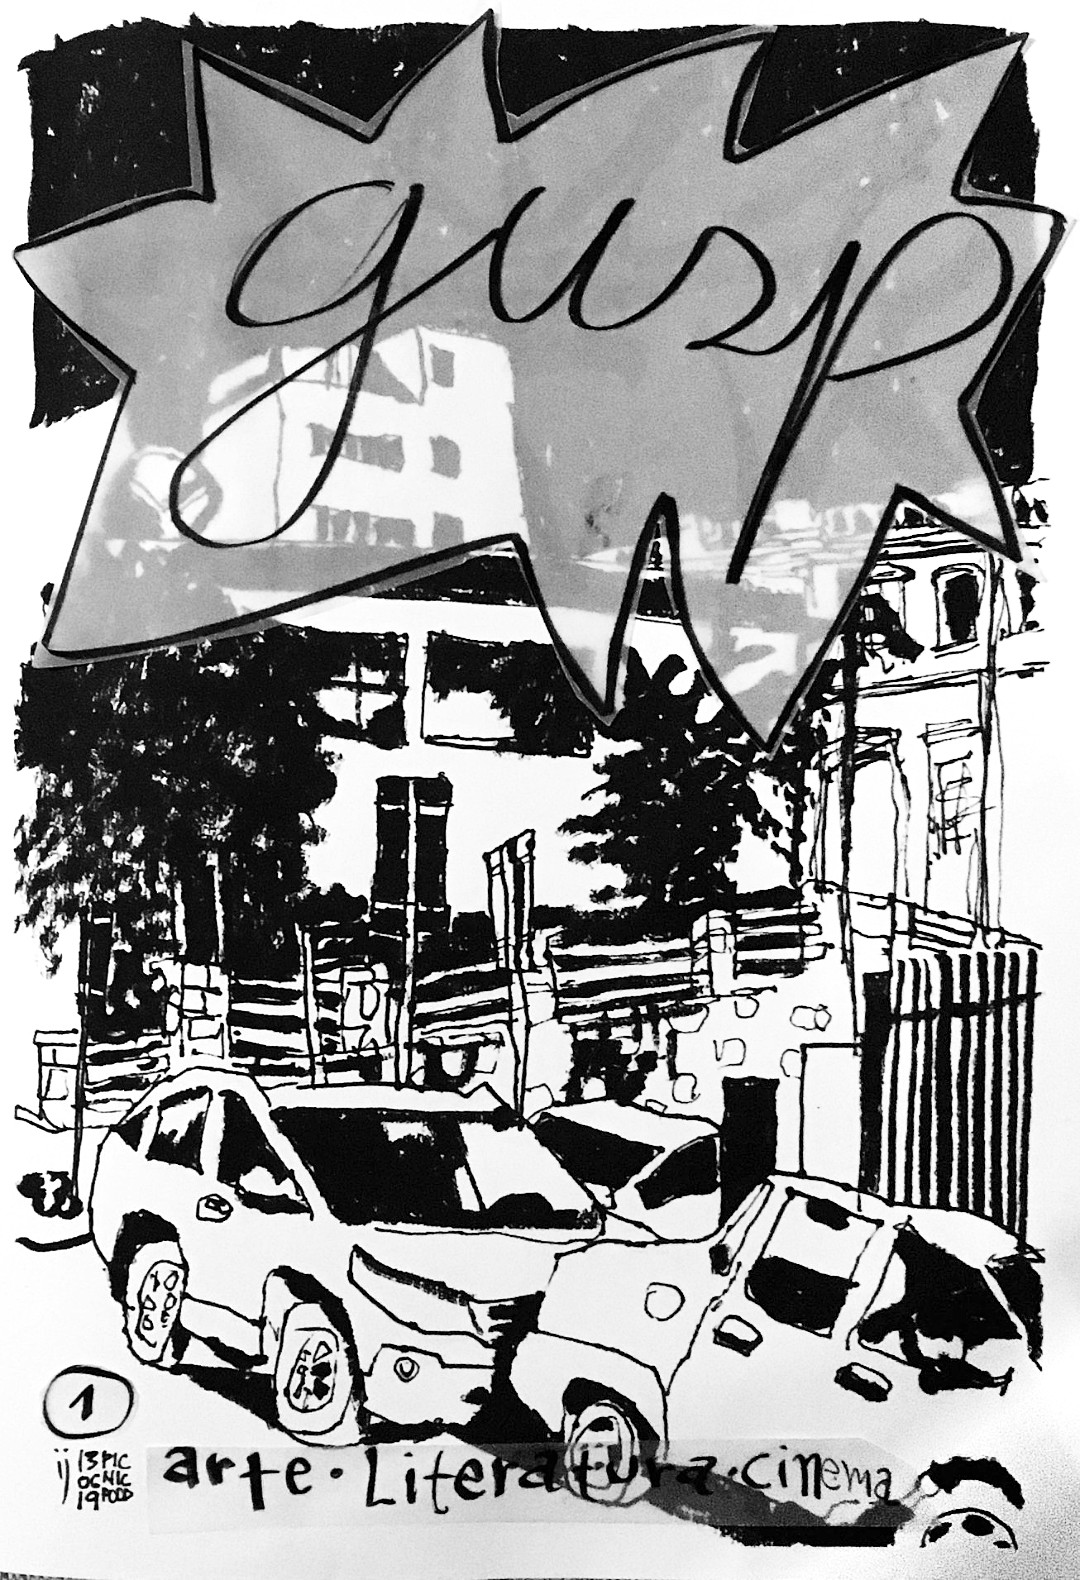 Capa do fanzine Gusp nº 1 mostra desenho a traço da esquina das ruas Victor Meirelles e Nunes Machado